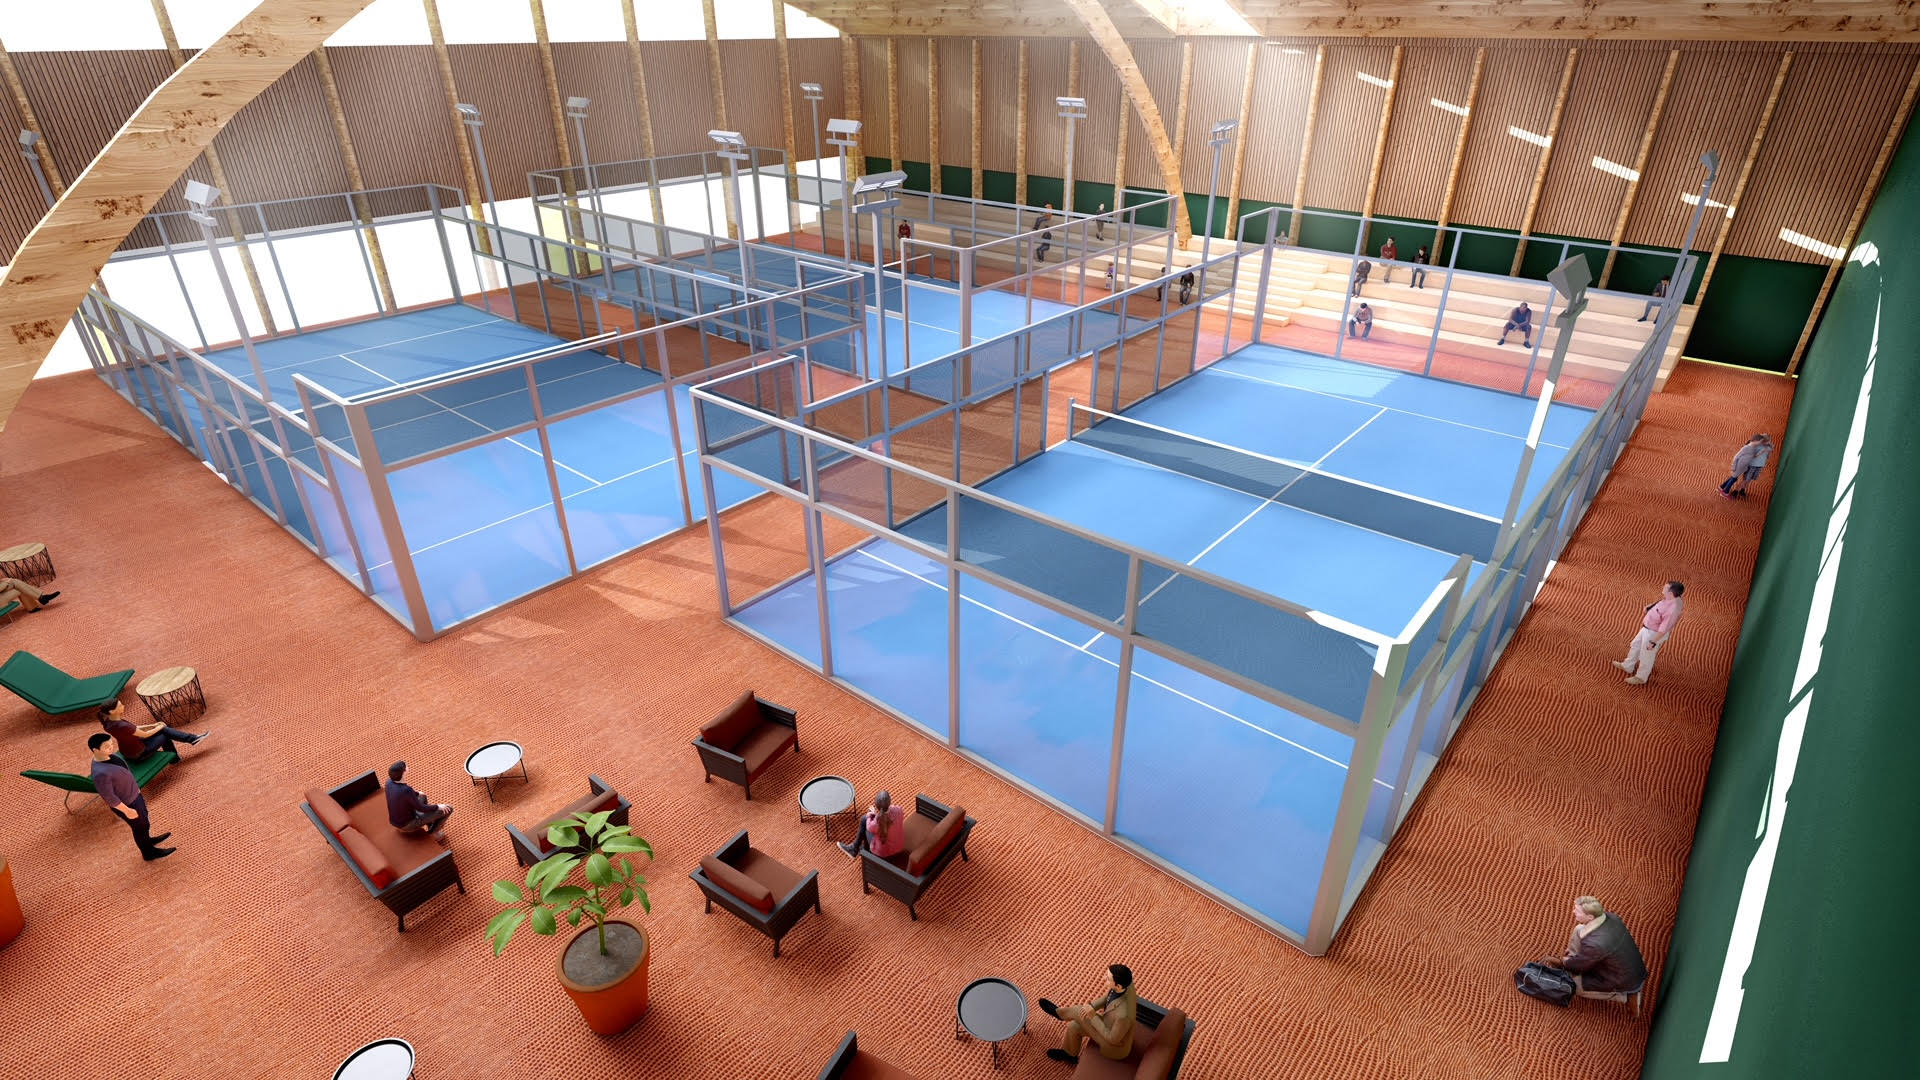 Grenoble Tennis lancerer sit projekt med 7 baner!